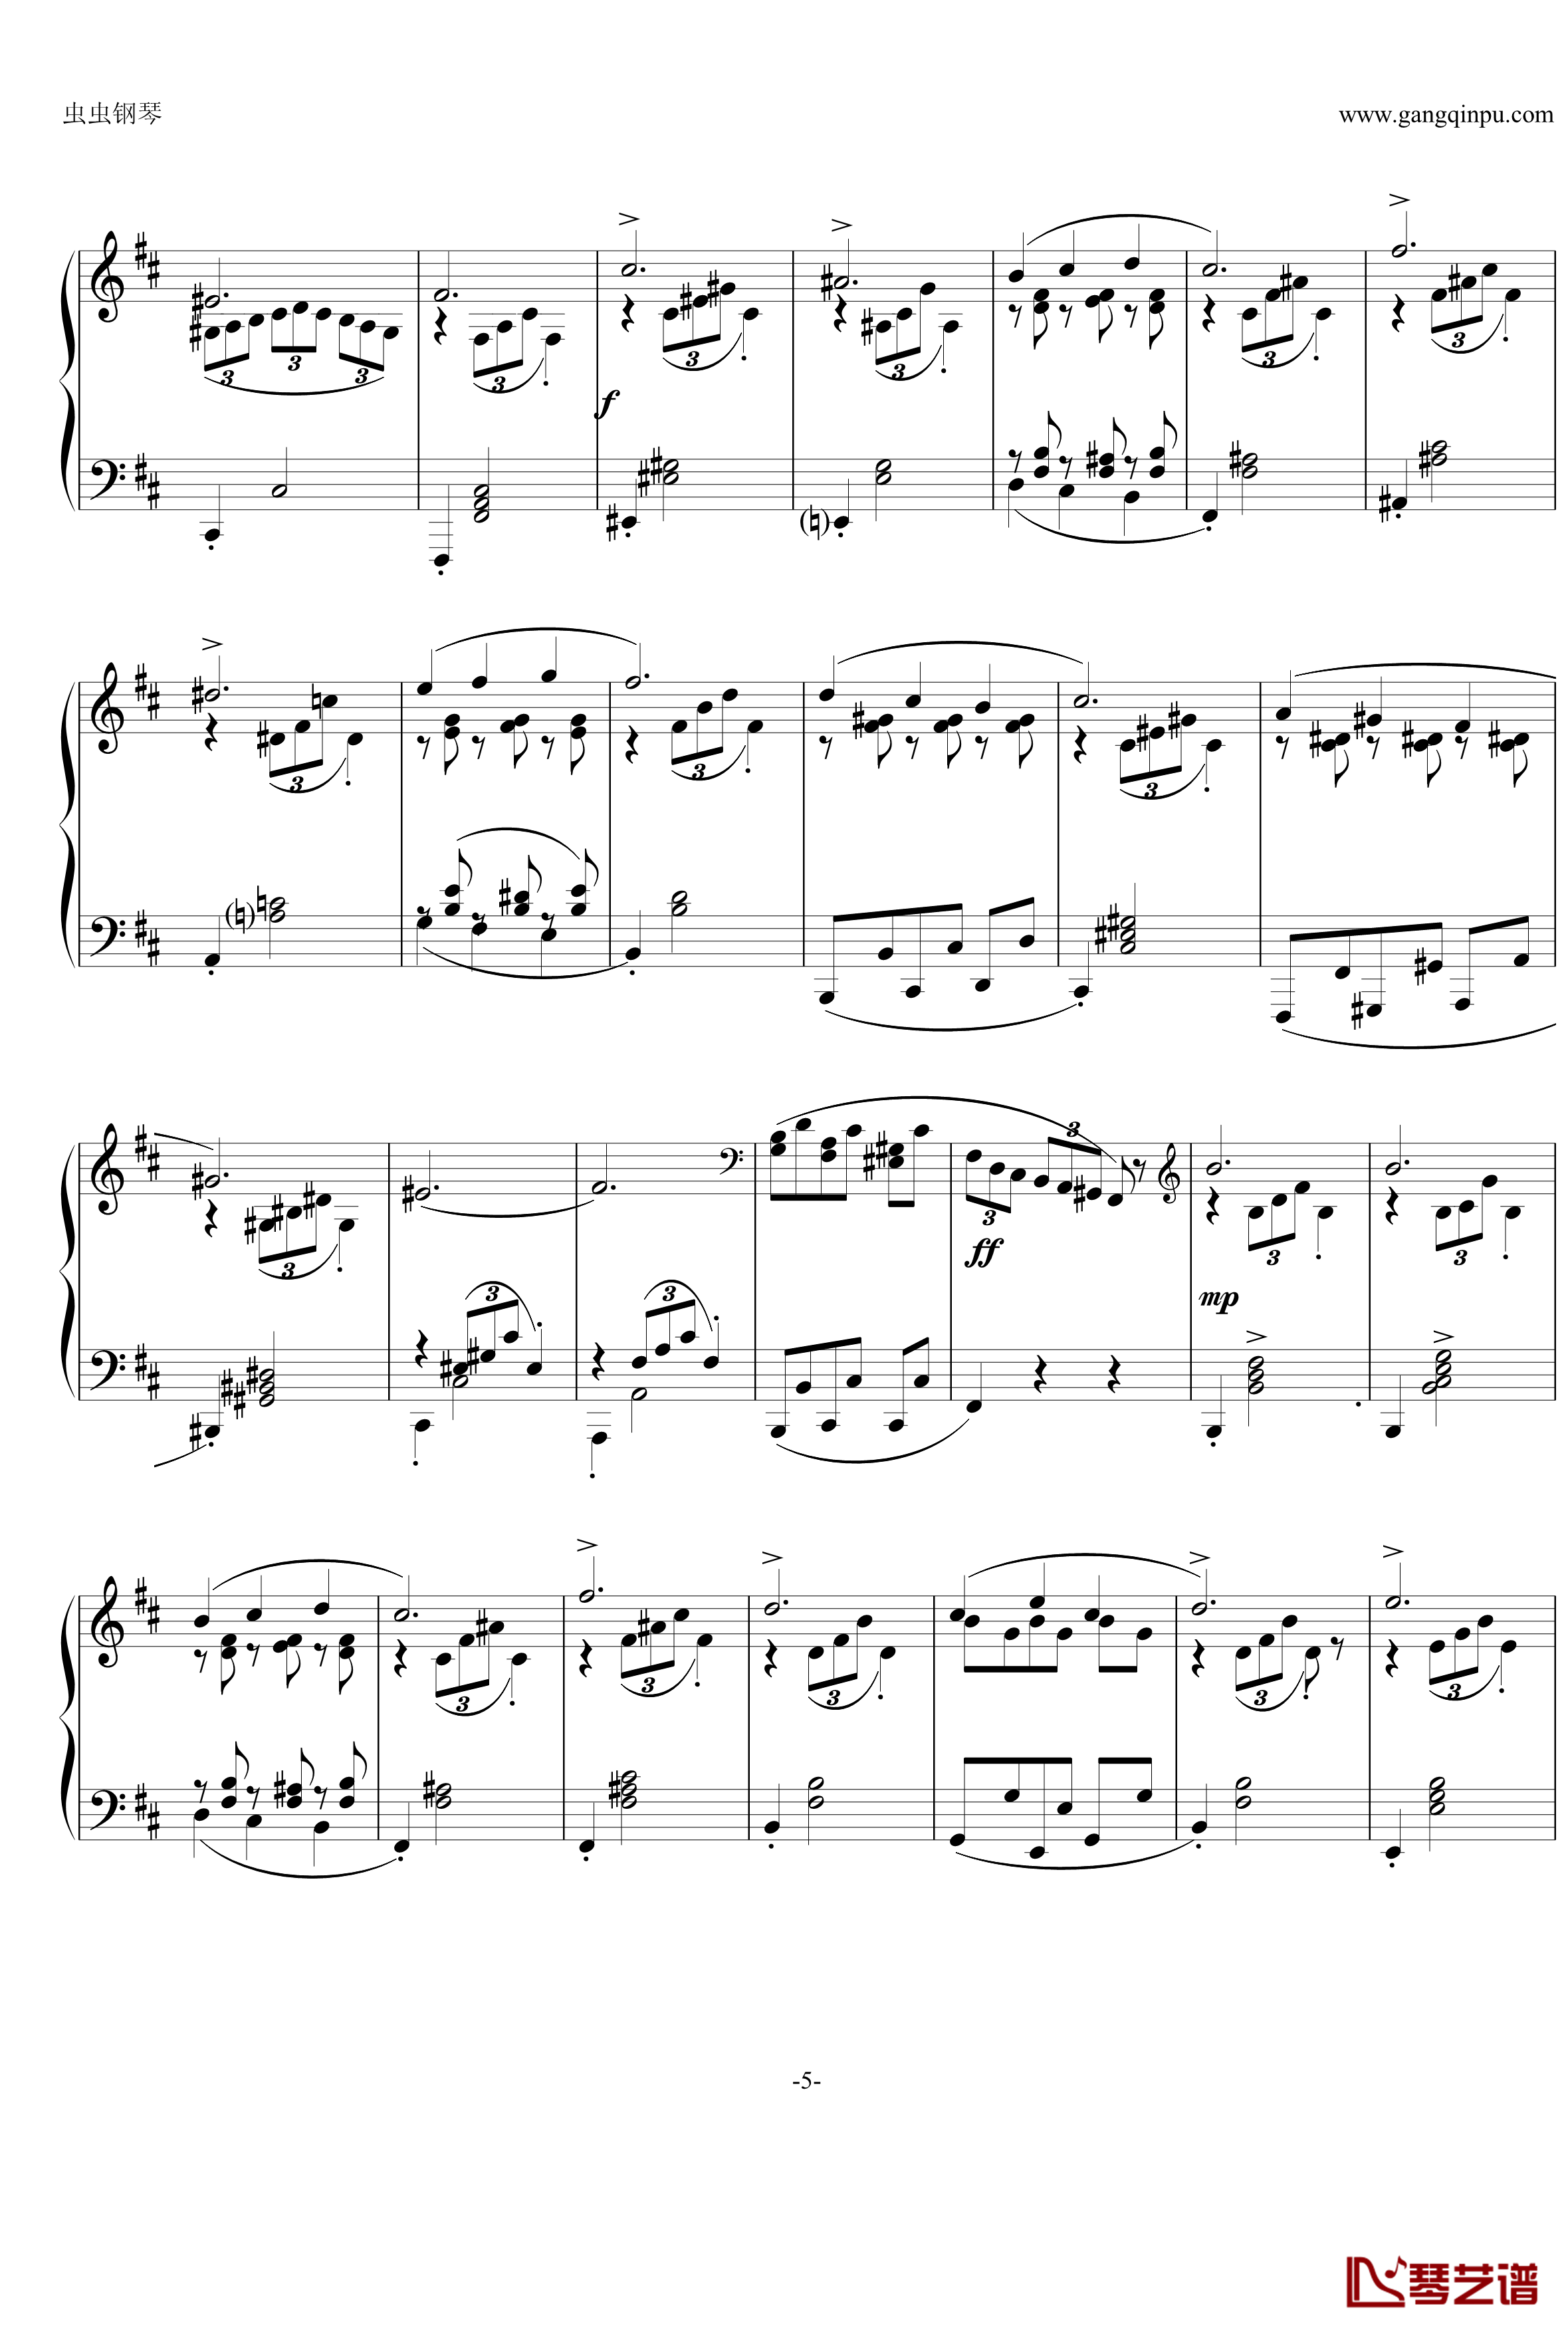 即兴曲Op.90 No.2钢琴谱-舒伯特-又名D899 No.25